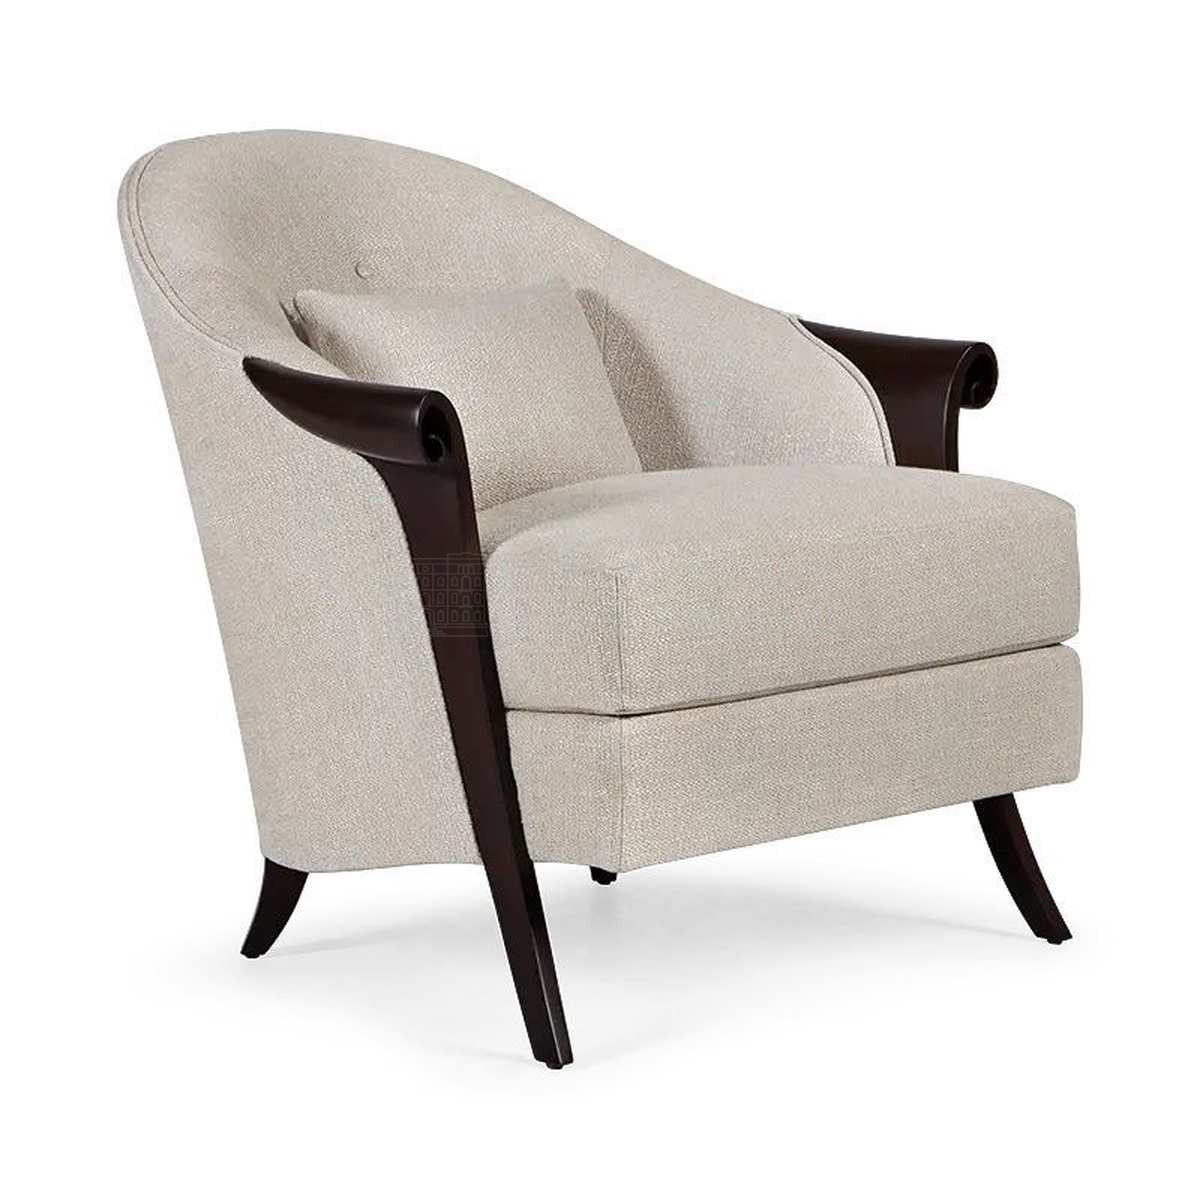 Кресло Piccadilly armchair  из США фабрики CHRISTOPHER GUY